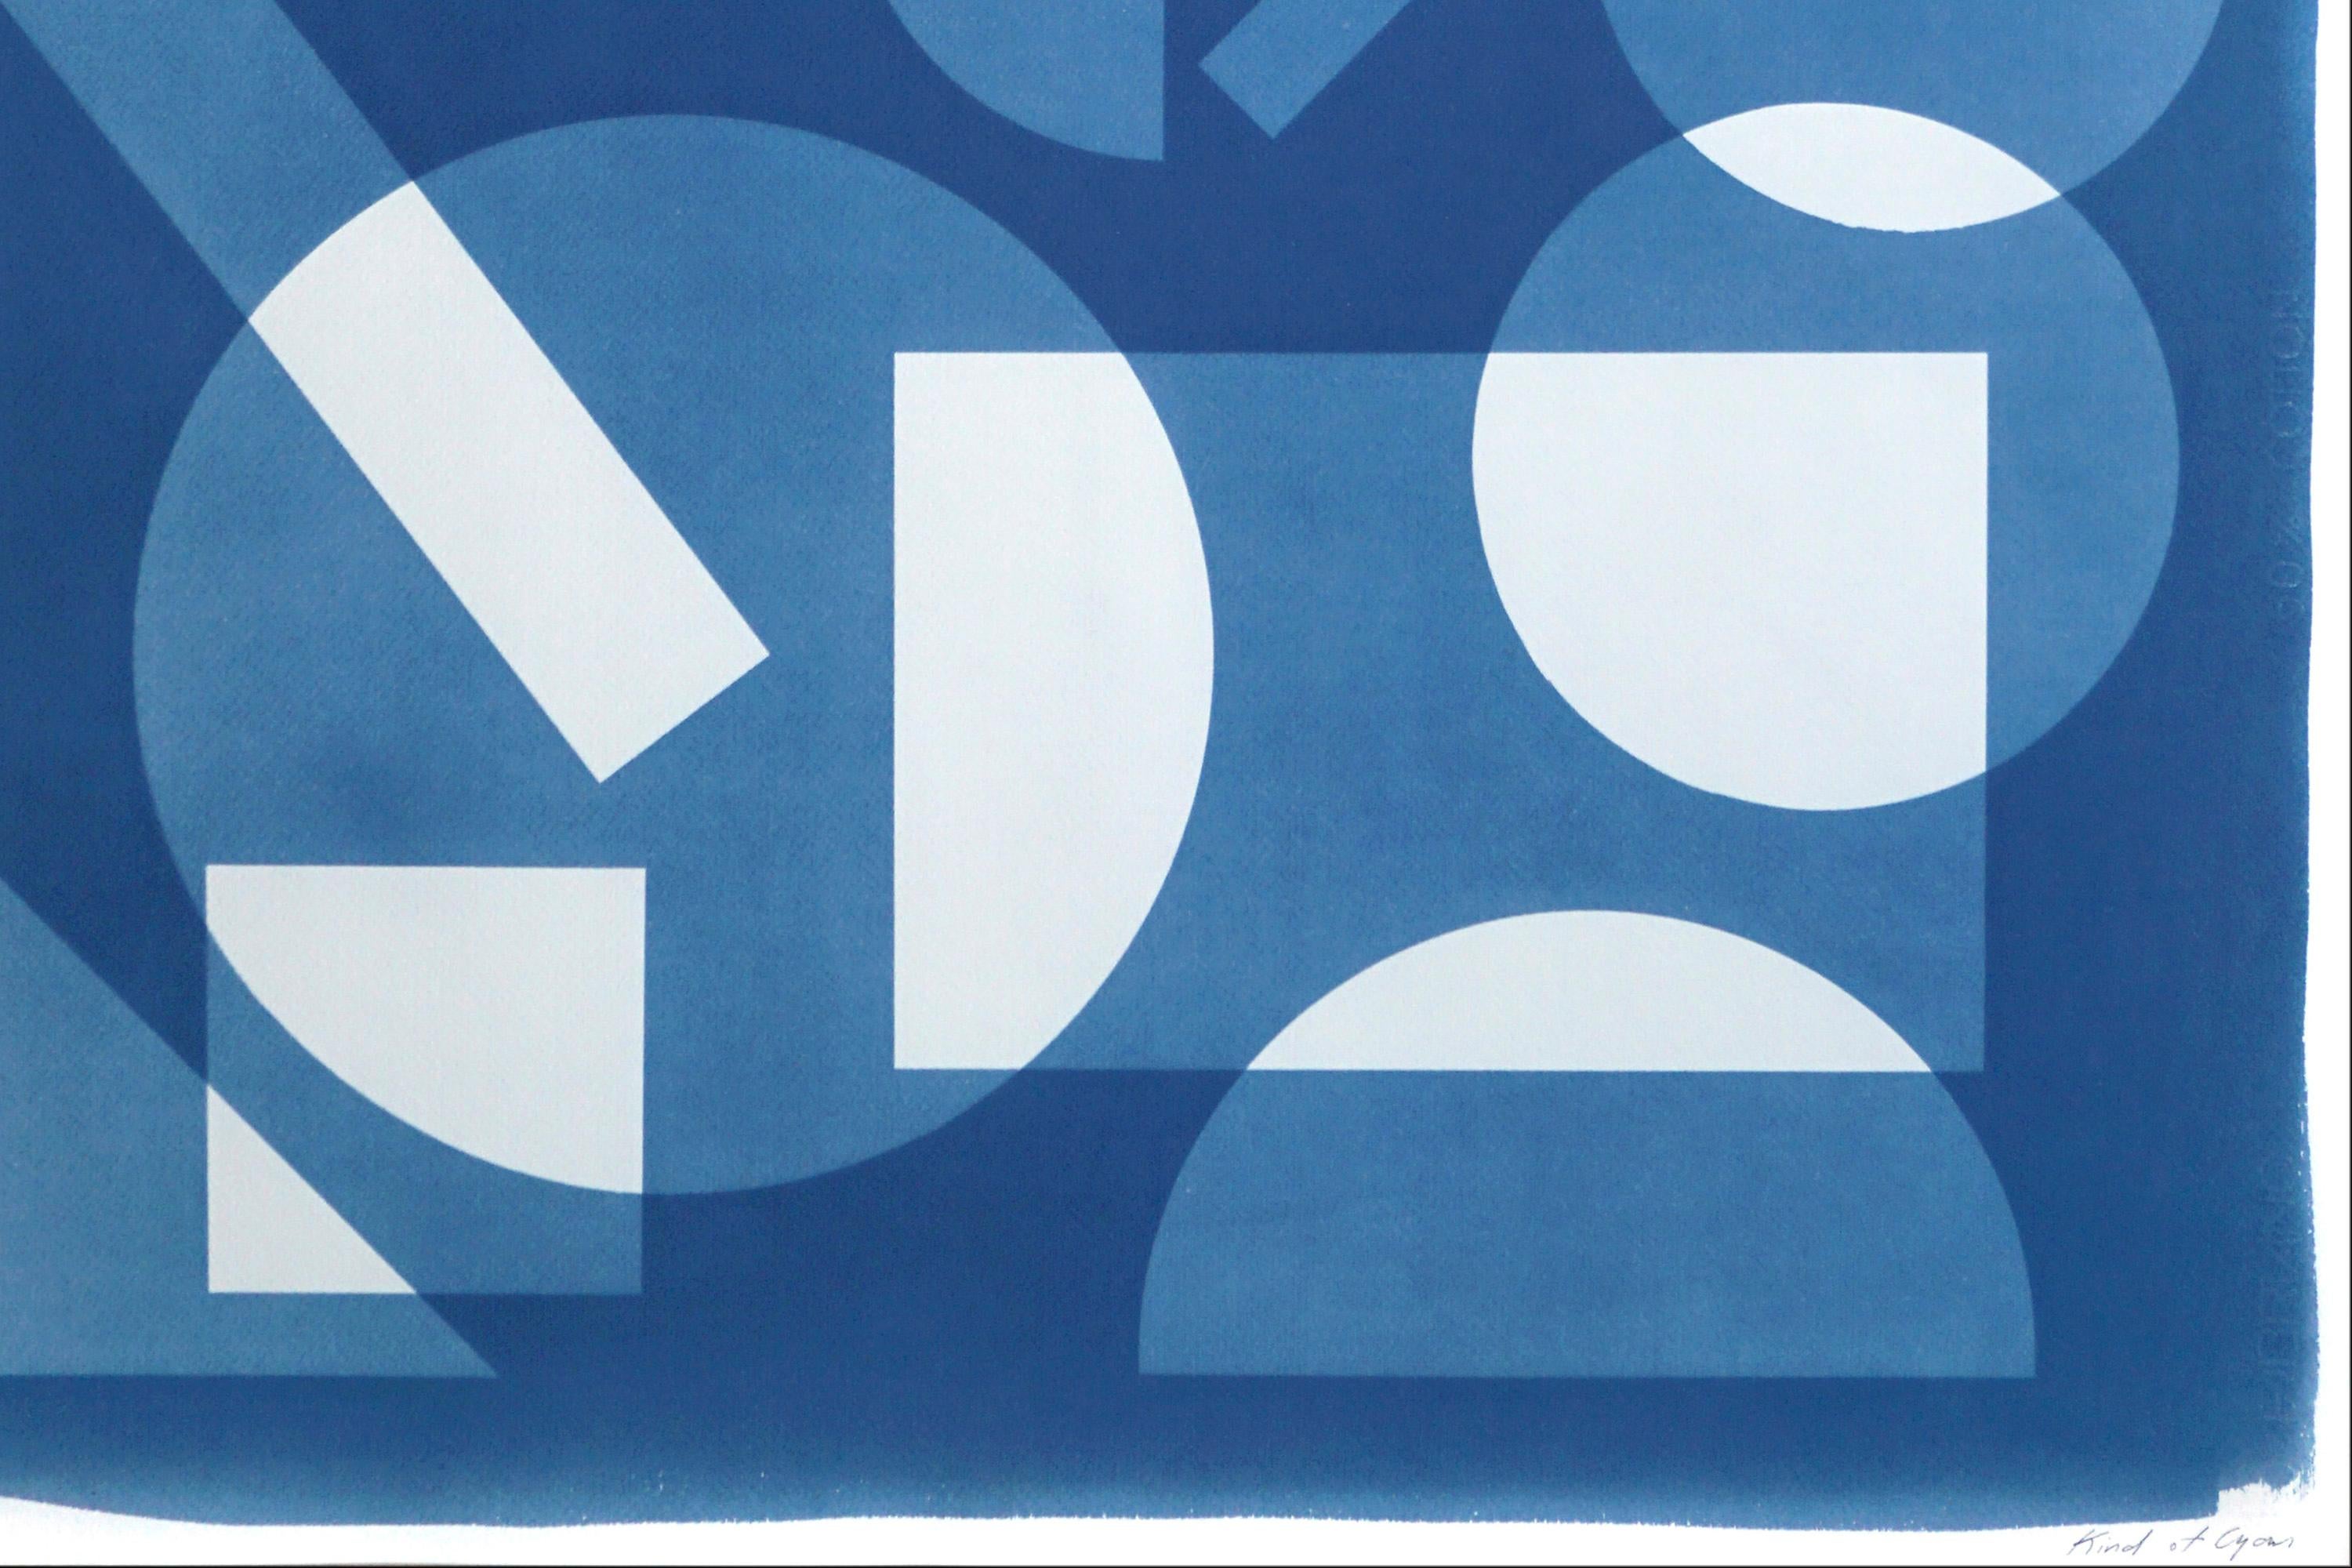 Konstruktivistische Monotypie in schwebenden Formen, weiße und blaue Geometrie (Blau), Abstract Print, von Kind of Cyan